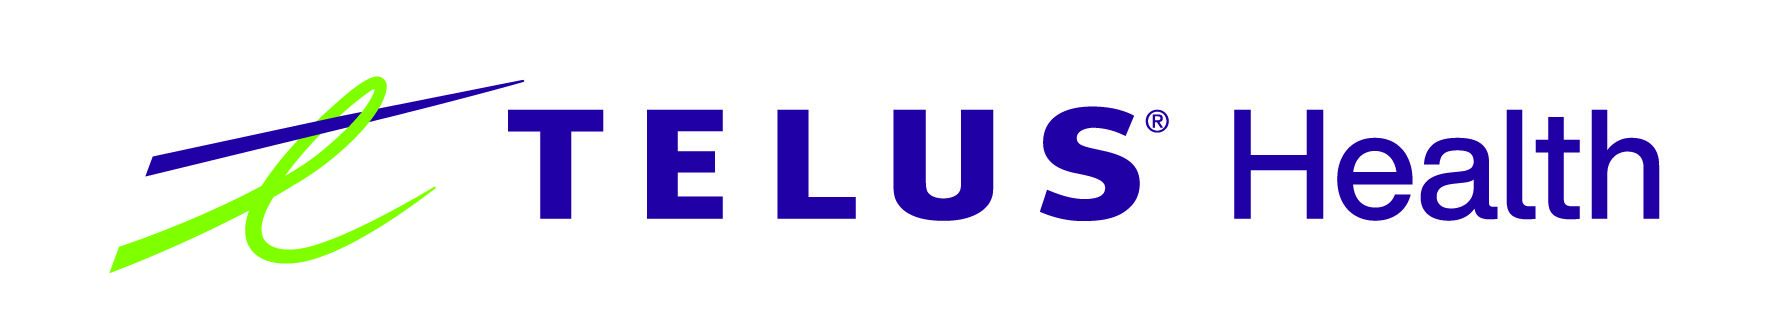 TELUS-Health-logo